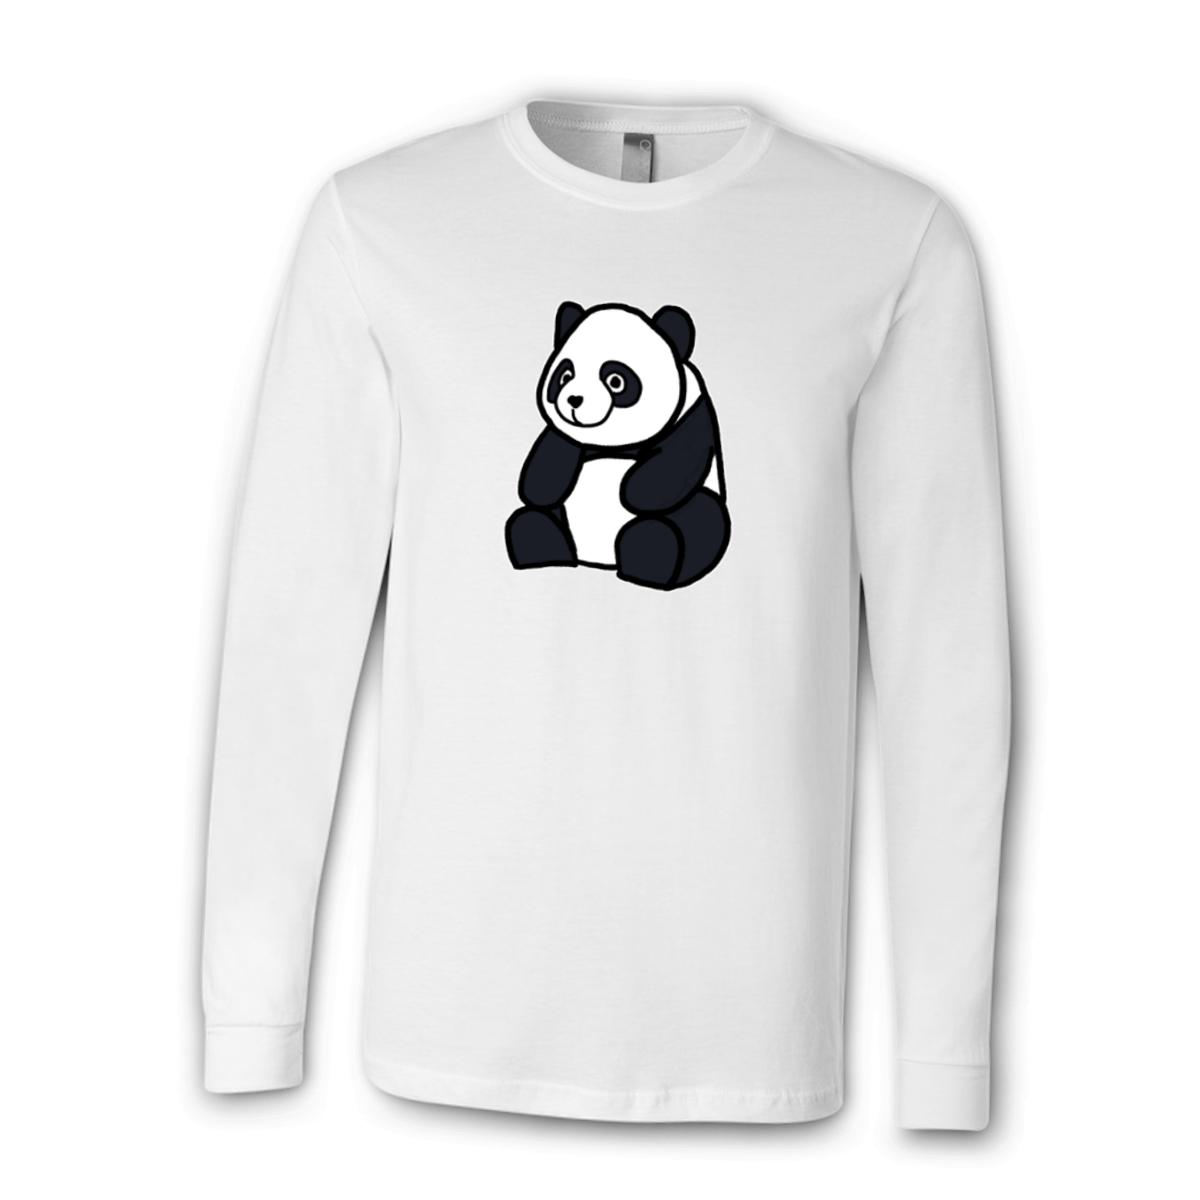 Panda Unisex Long Sleeve Tee Large white